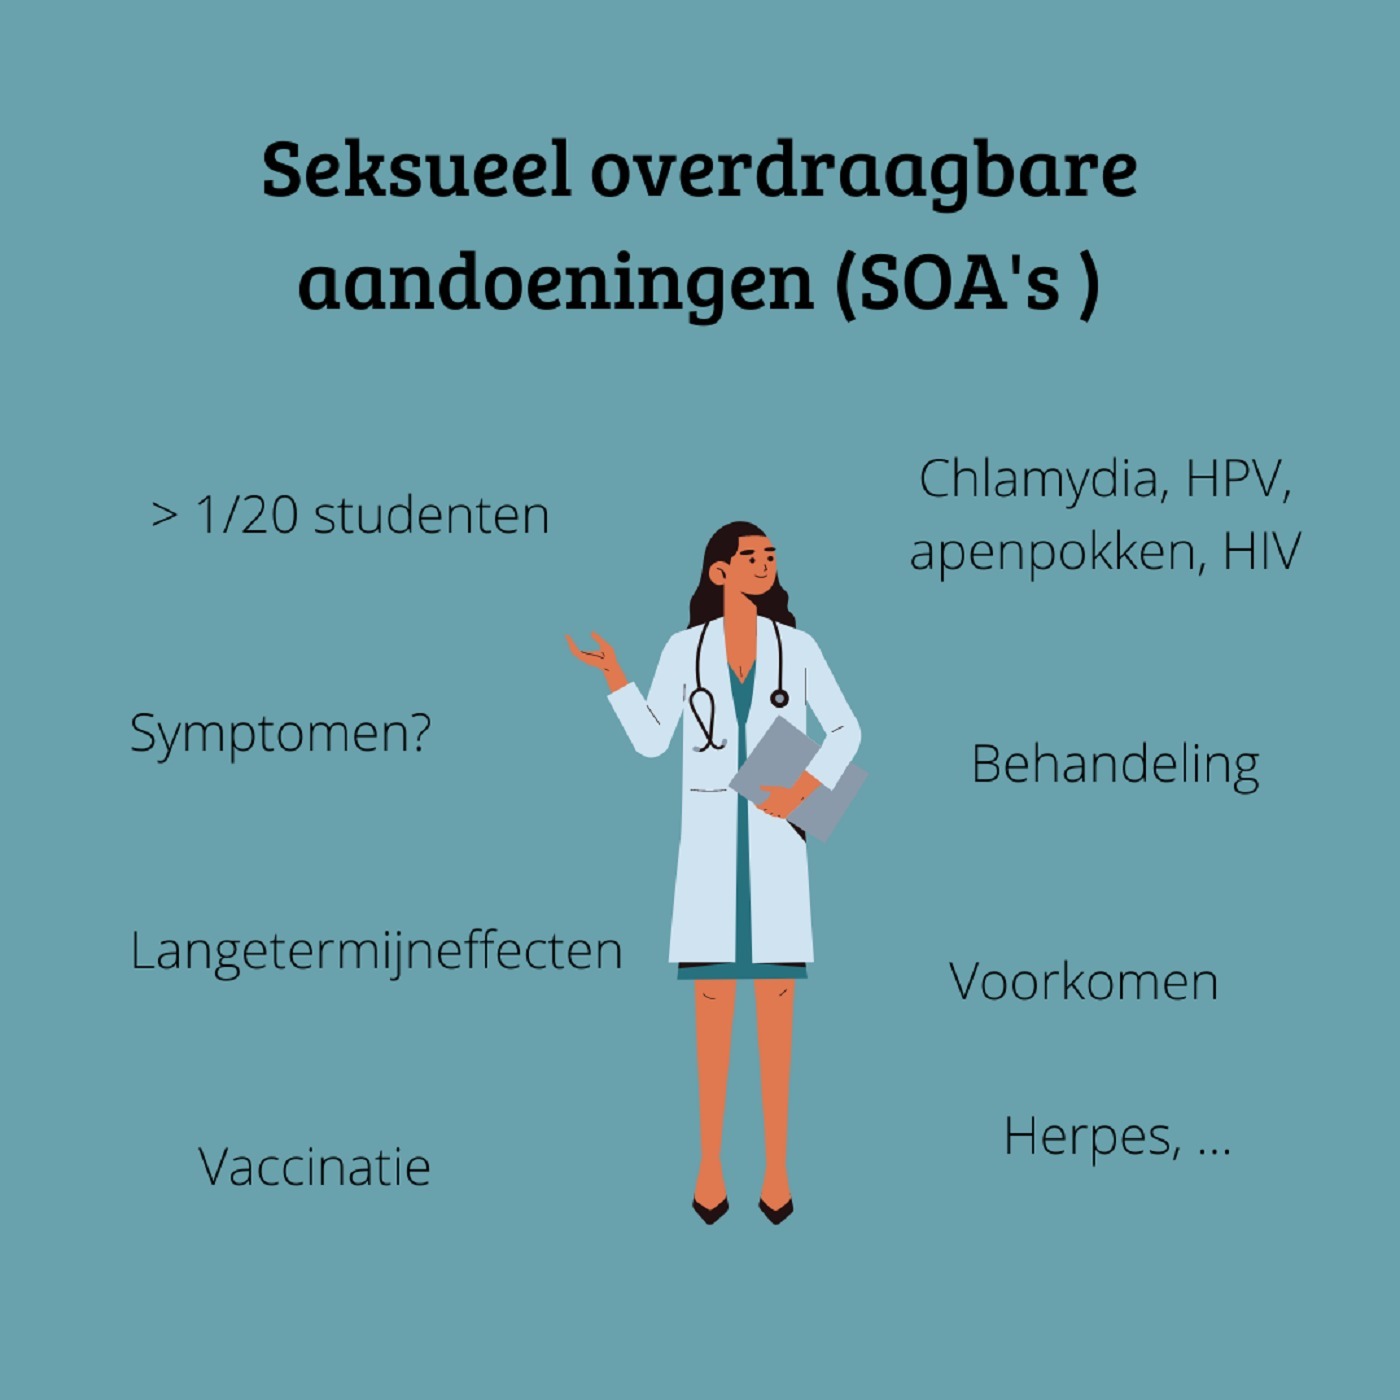 Seksueel overdraagbare aandoeningen (SOA's)